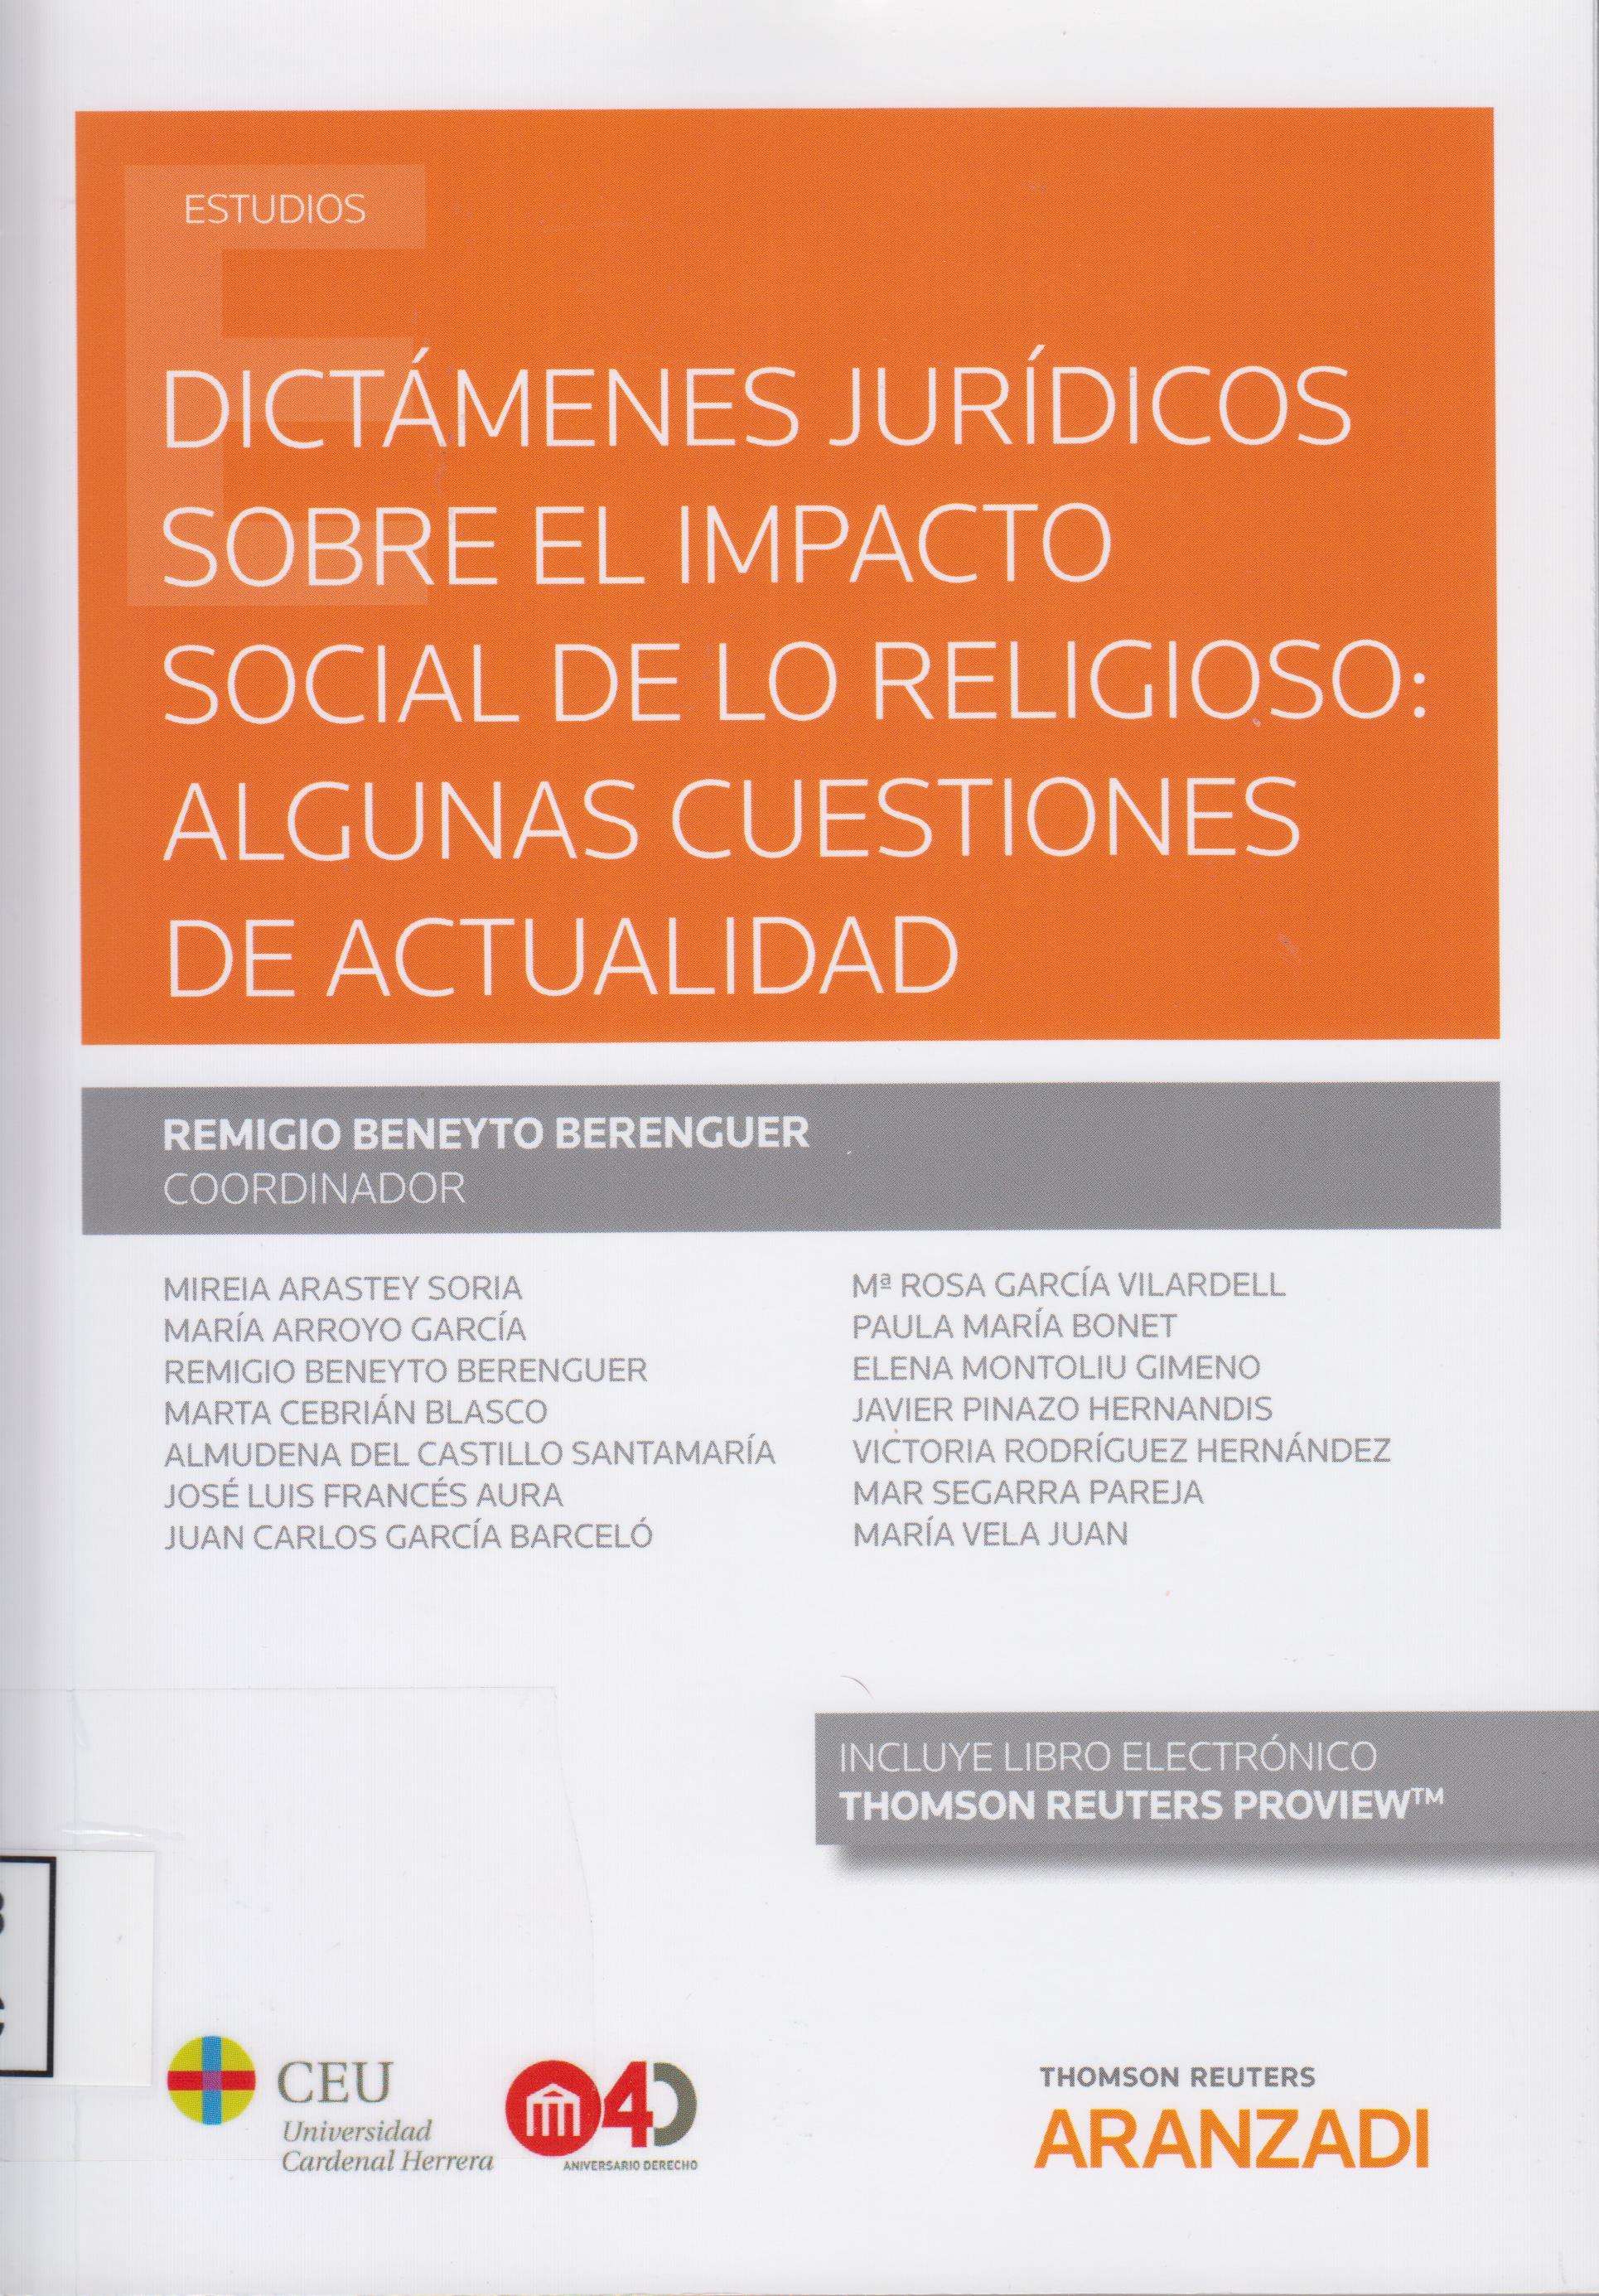 Imagen de portada del libro Dictámenes jurídicos sobre el impacto social de los religioso